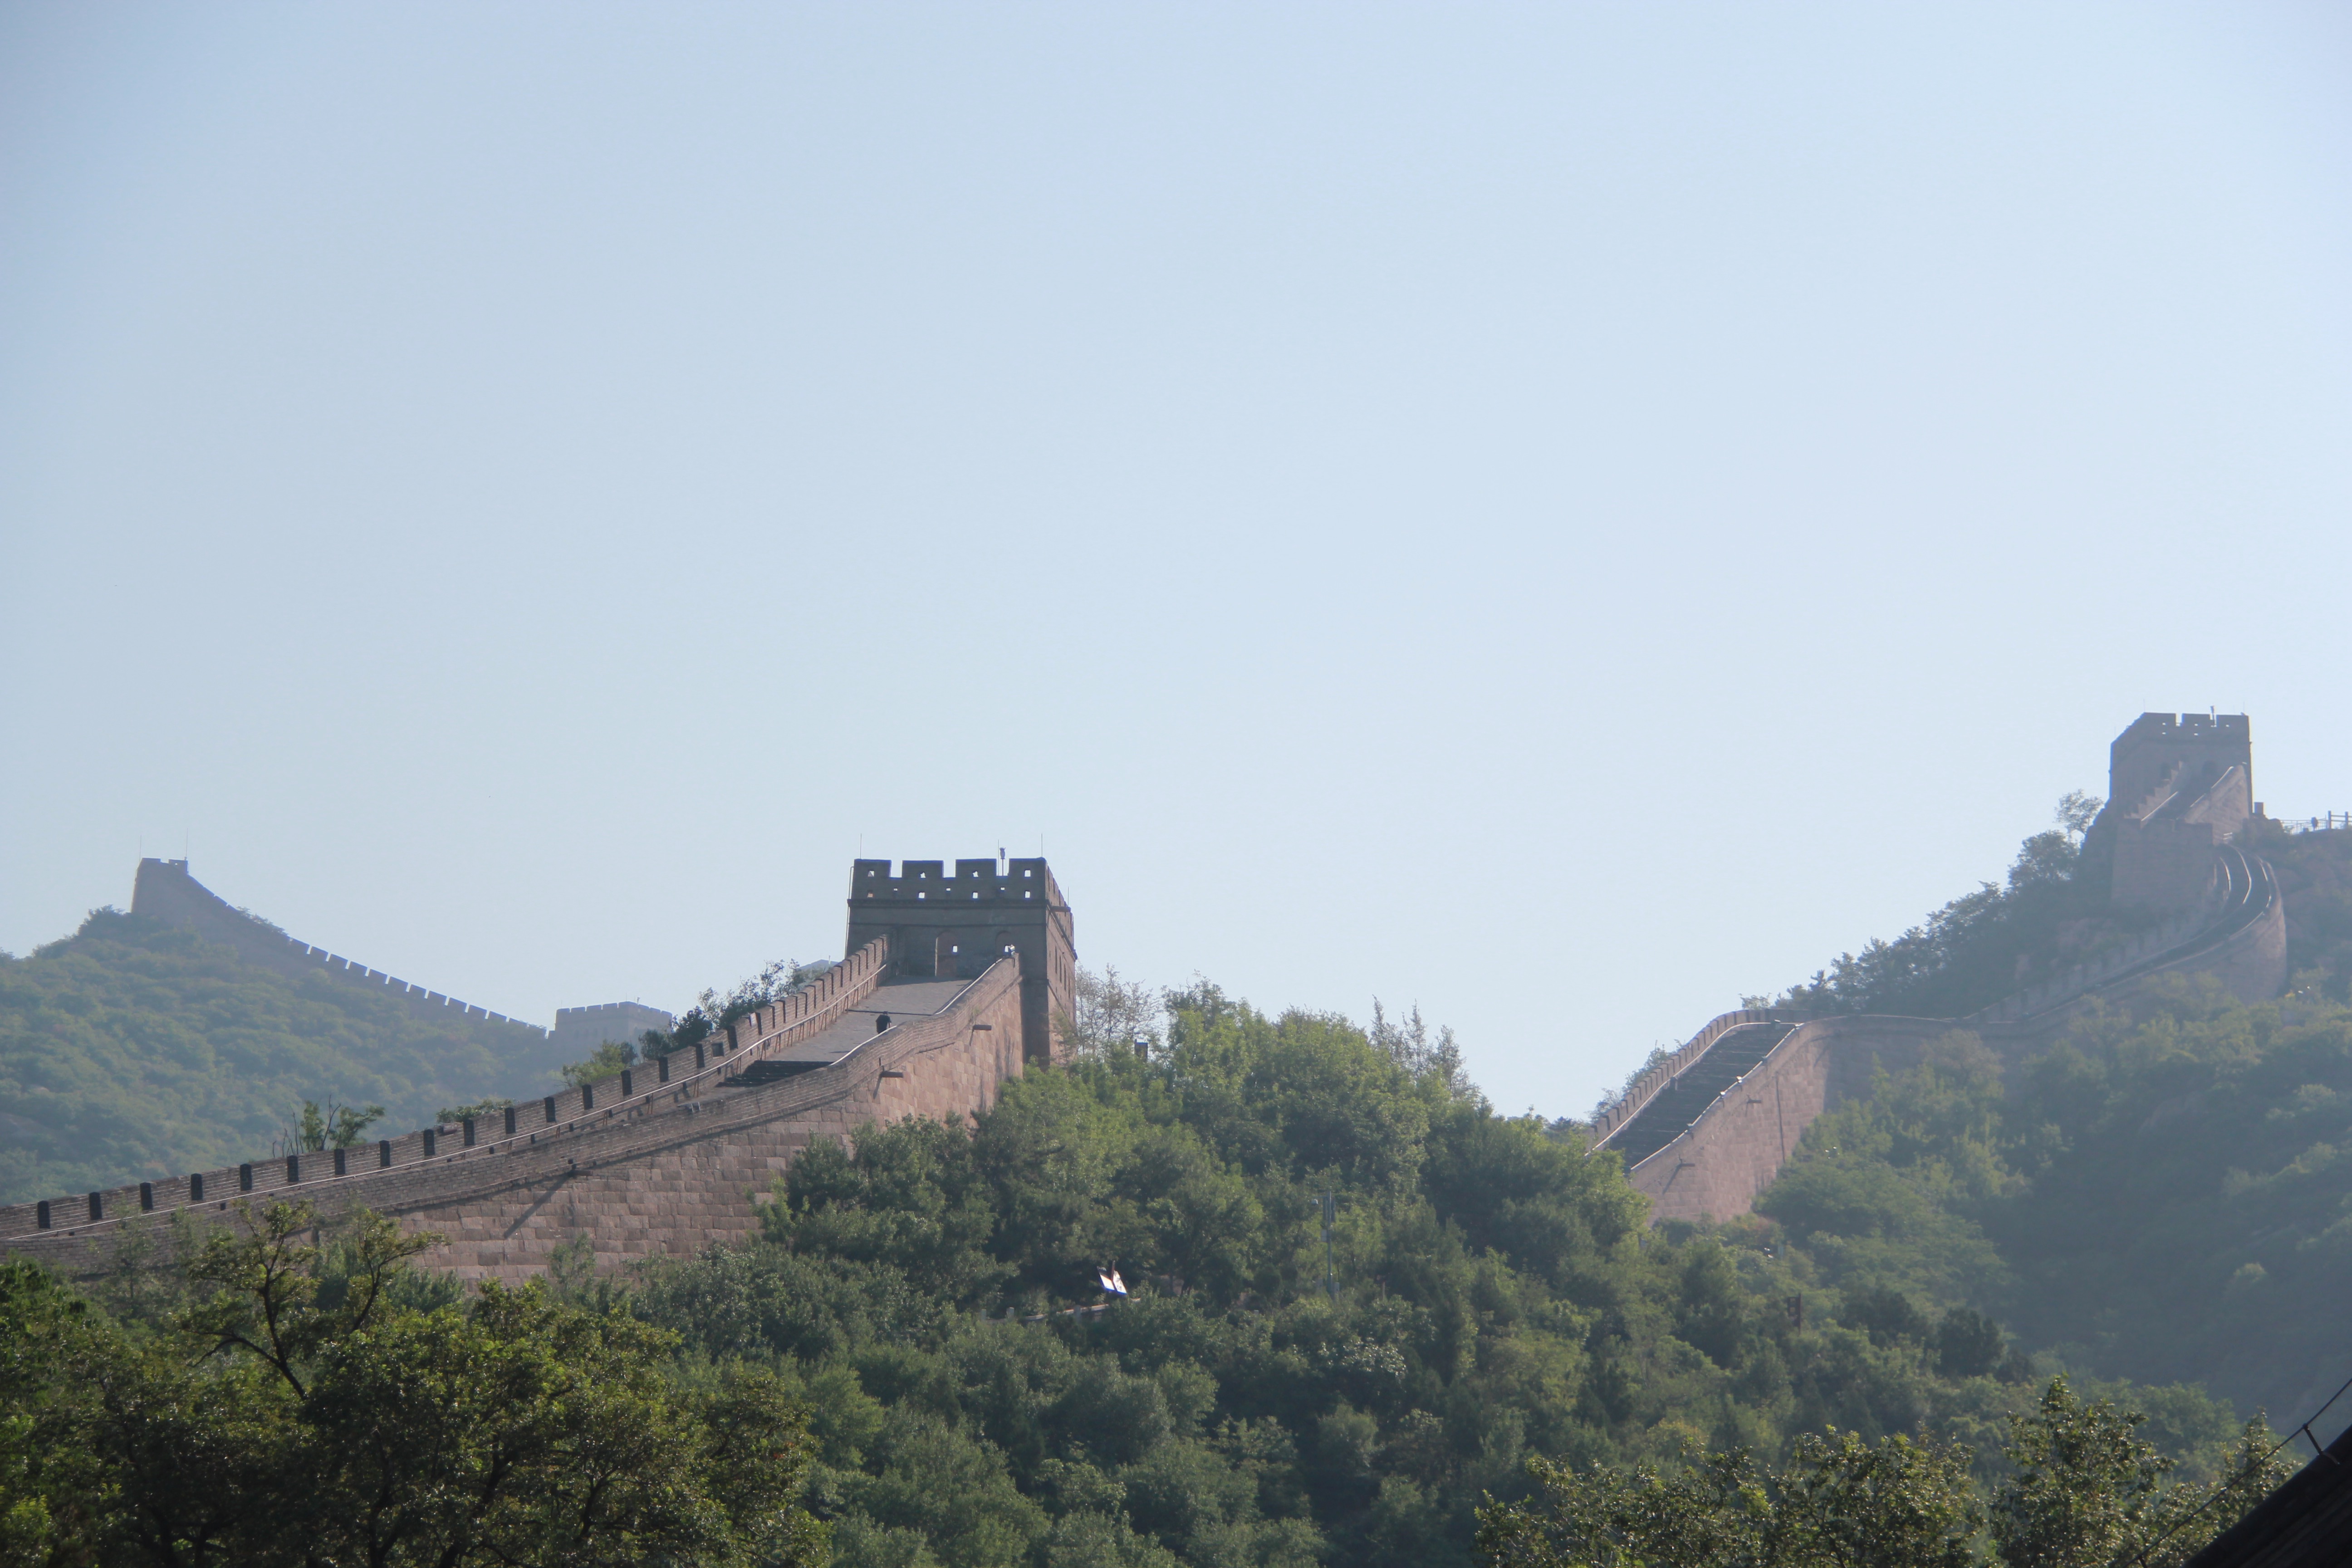 Day 5: Visiting the Great Wall of China in Badaling, China